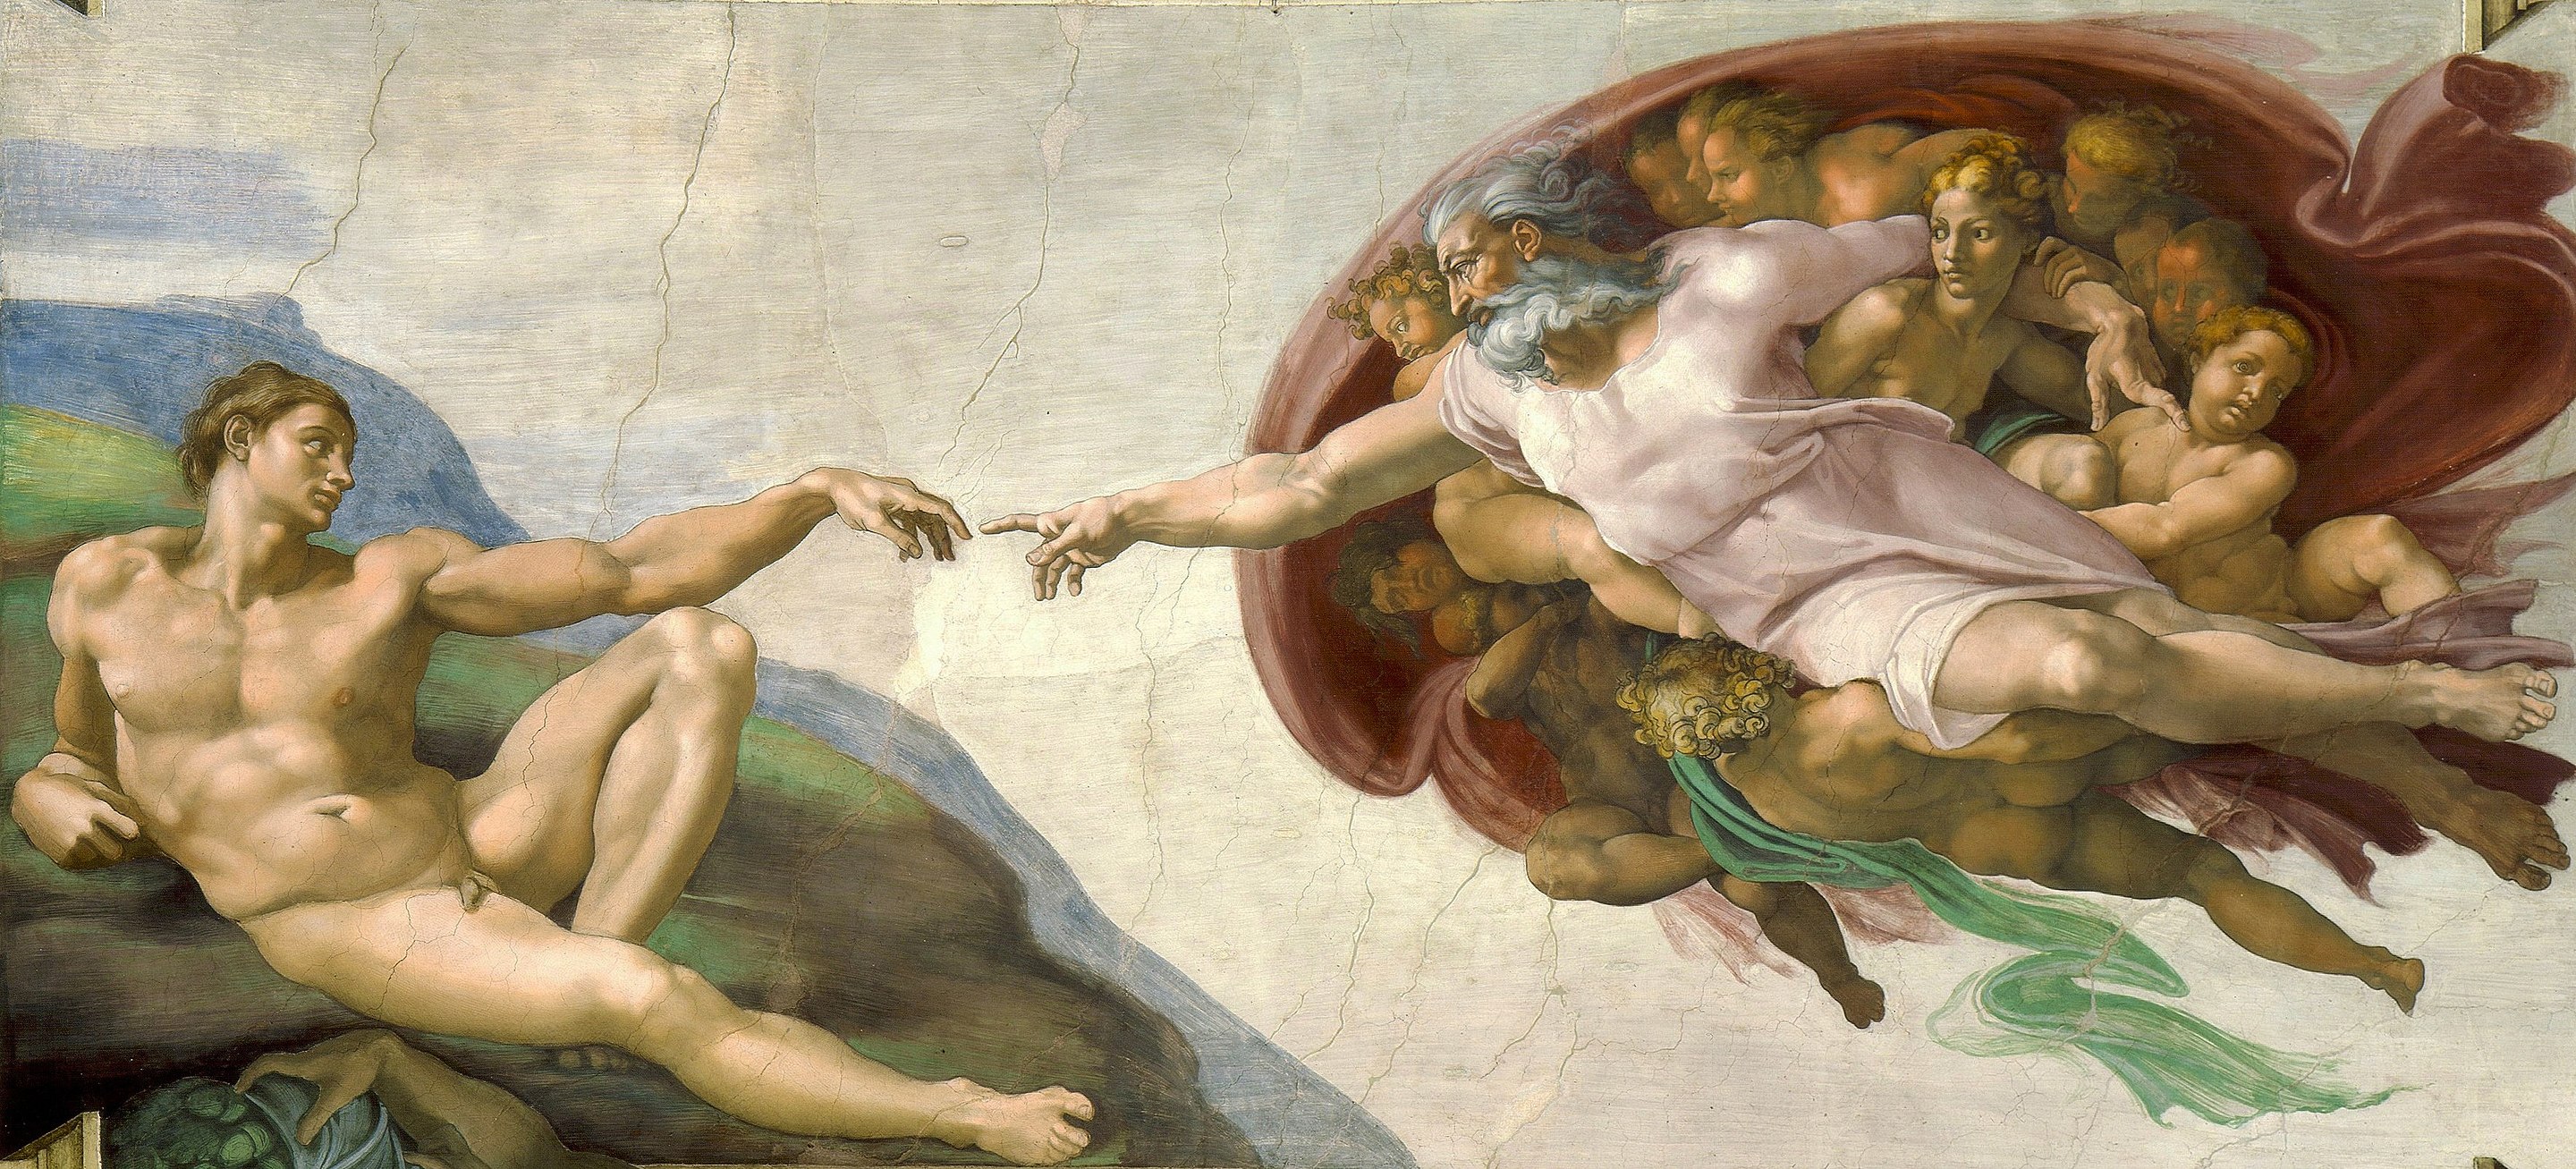 Adem'in Yaratılışı (orig. "The Creation of Adam") by  Michelangelo - 1508–1512 civarı - 280 × 570 cm 